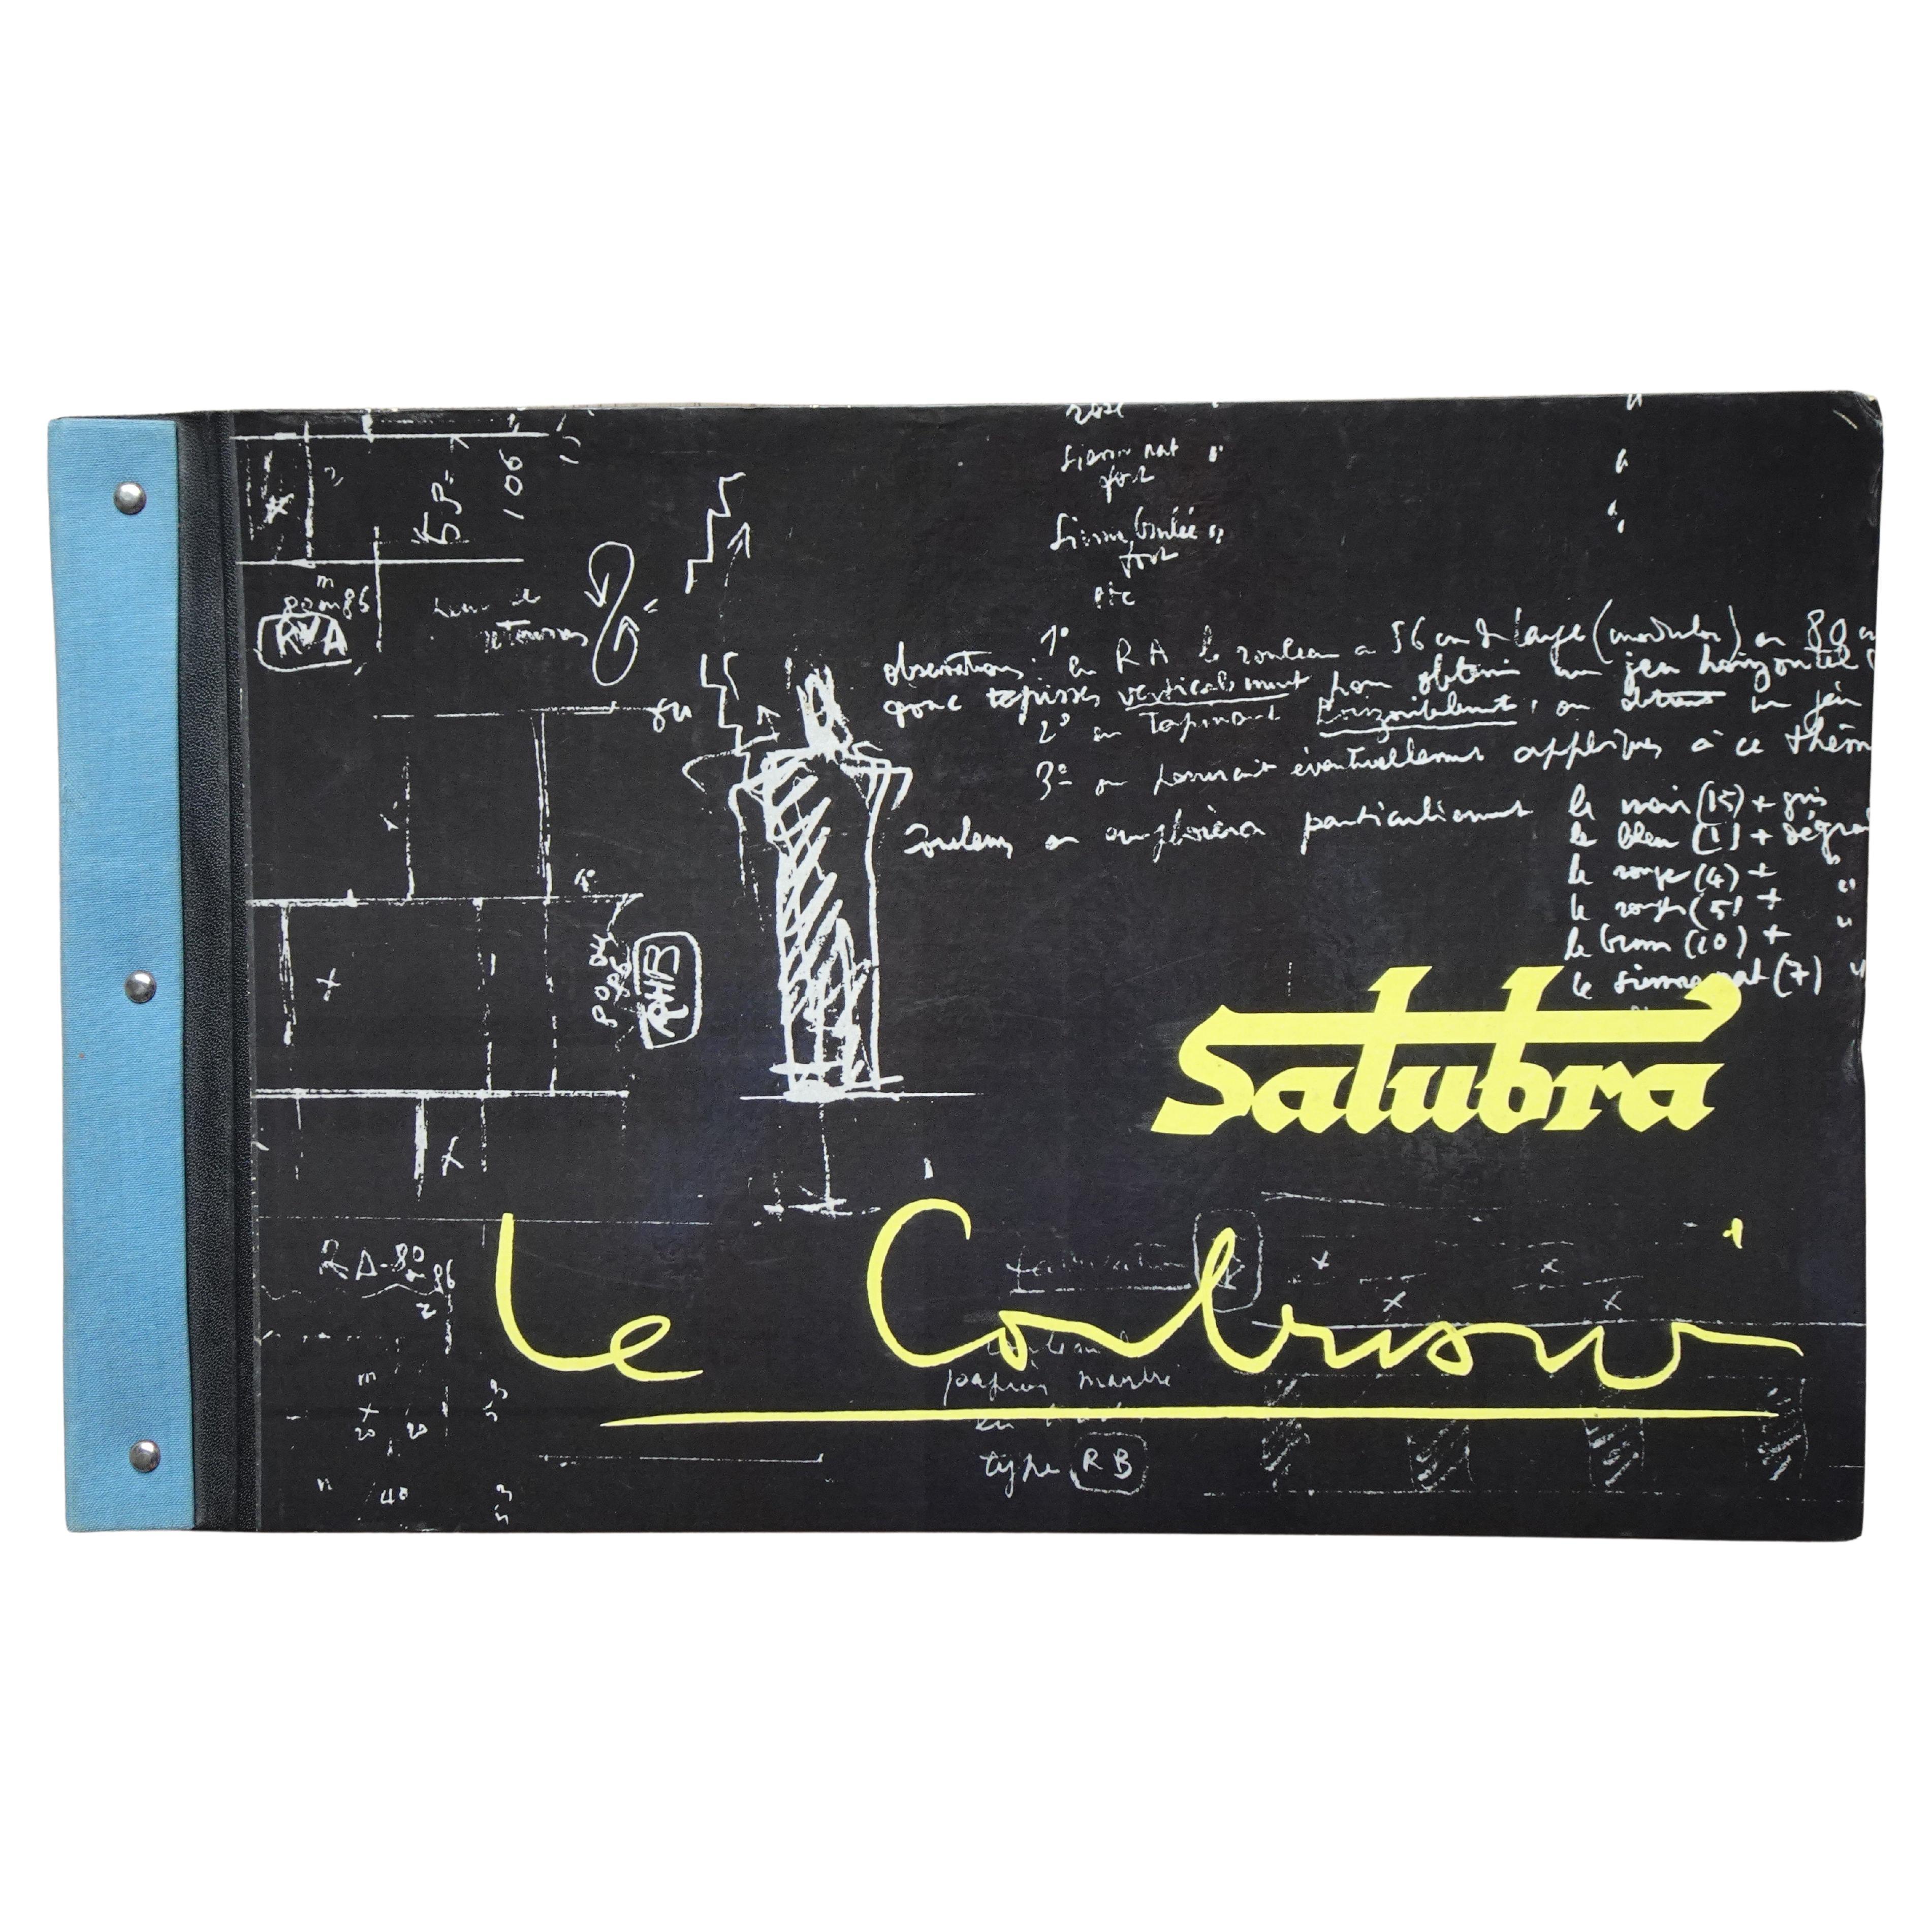 Deuxième édition du livre papier peint Salubra de Le Corbusier 1959